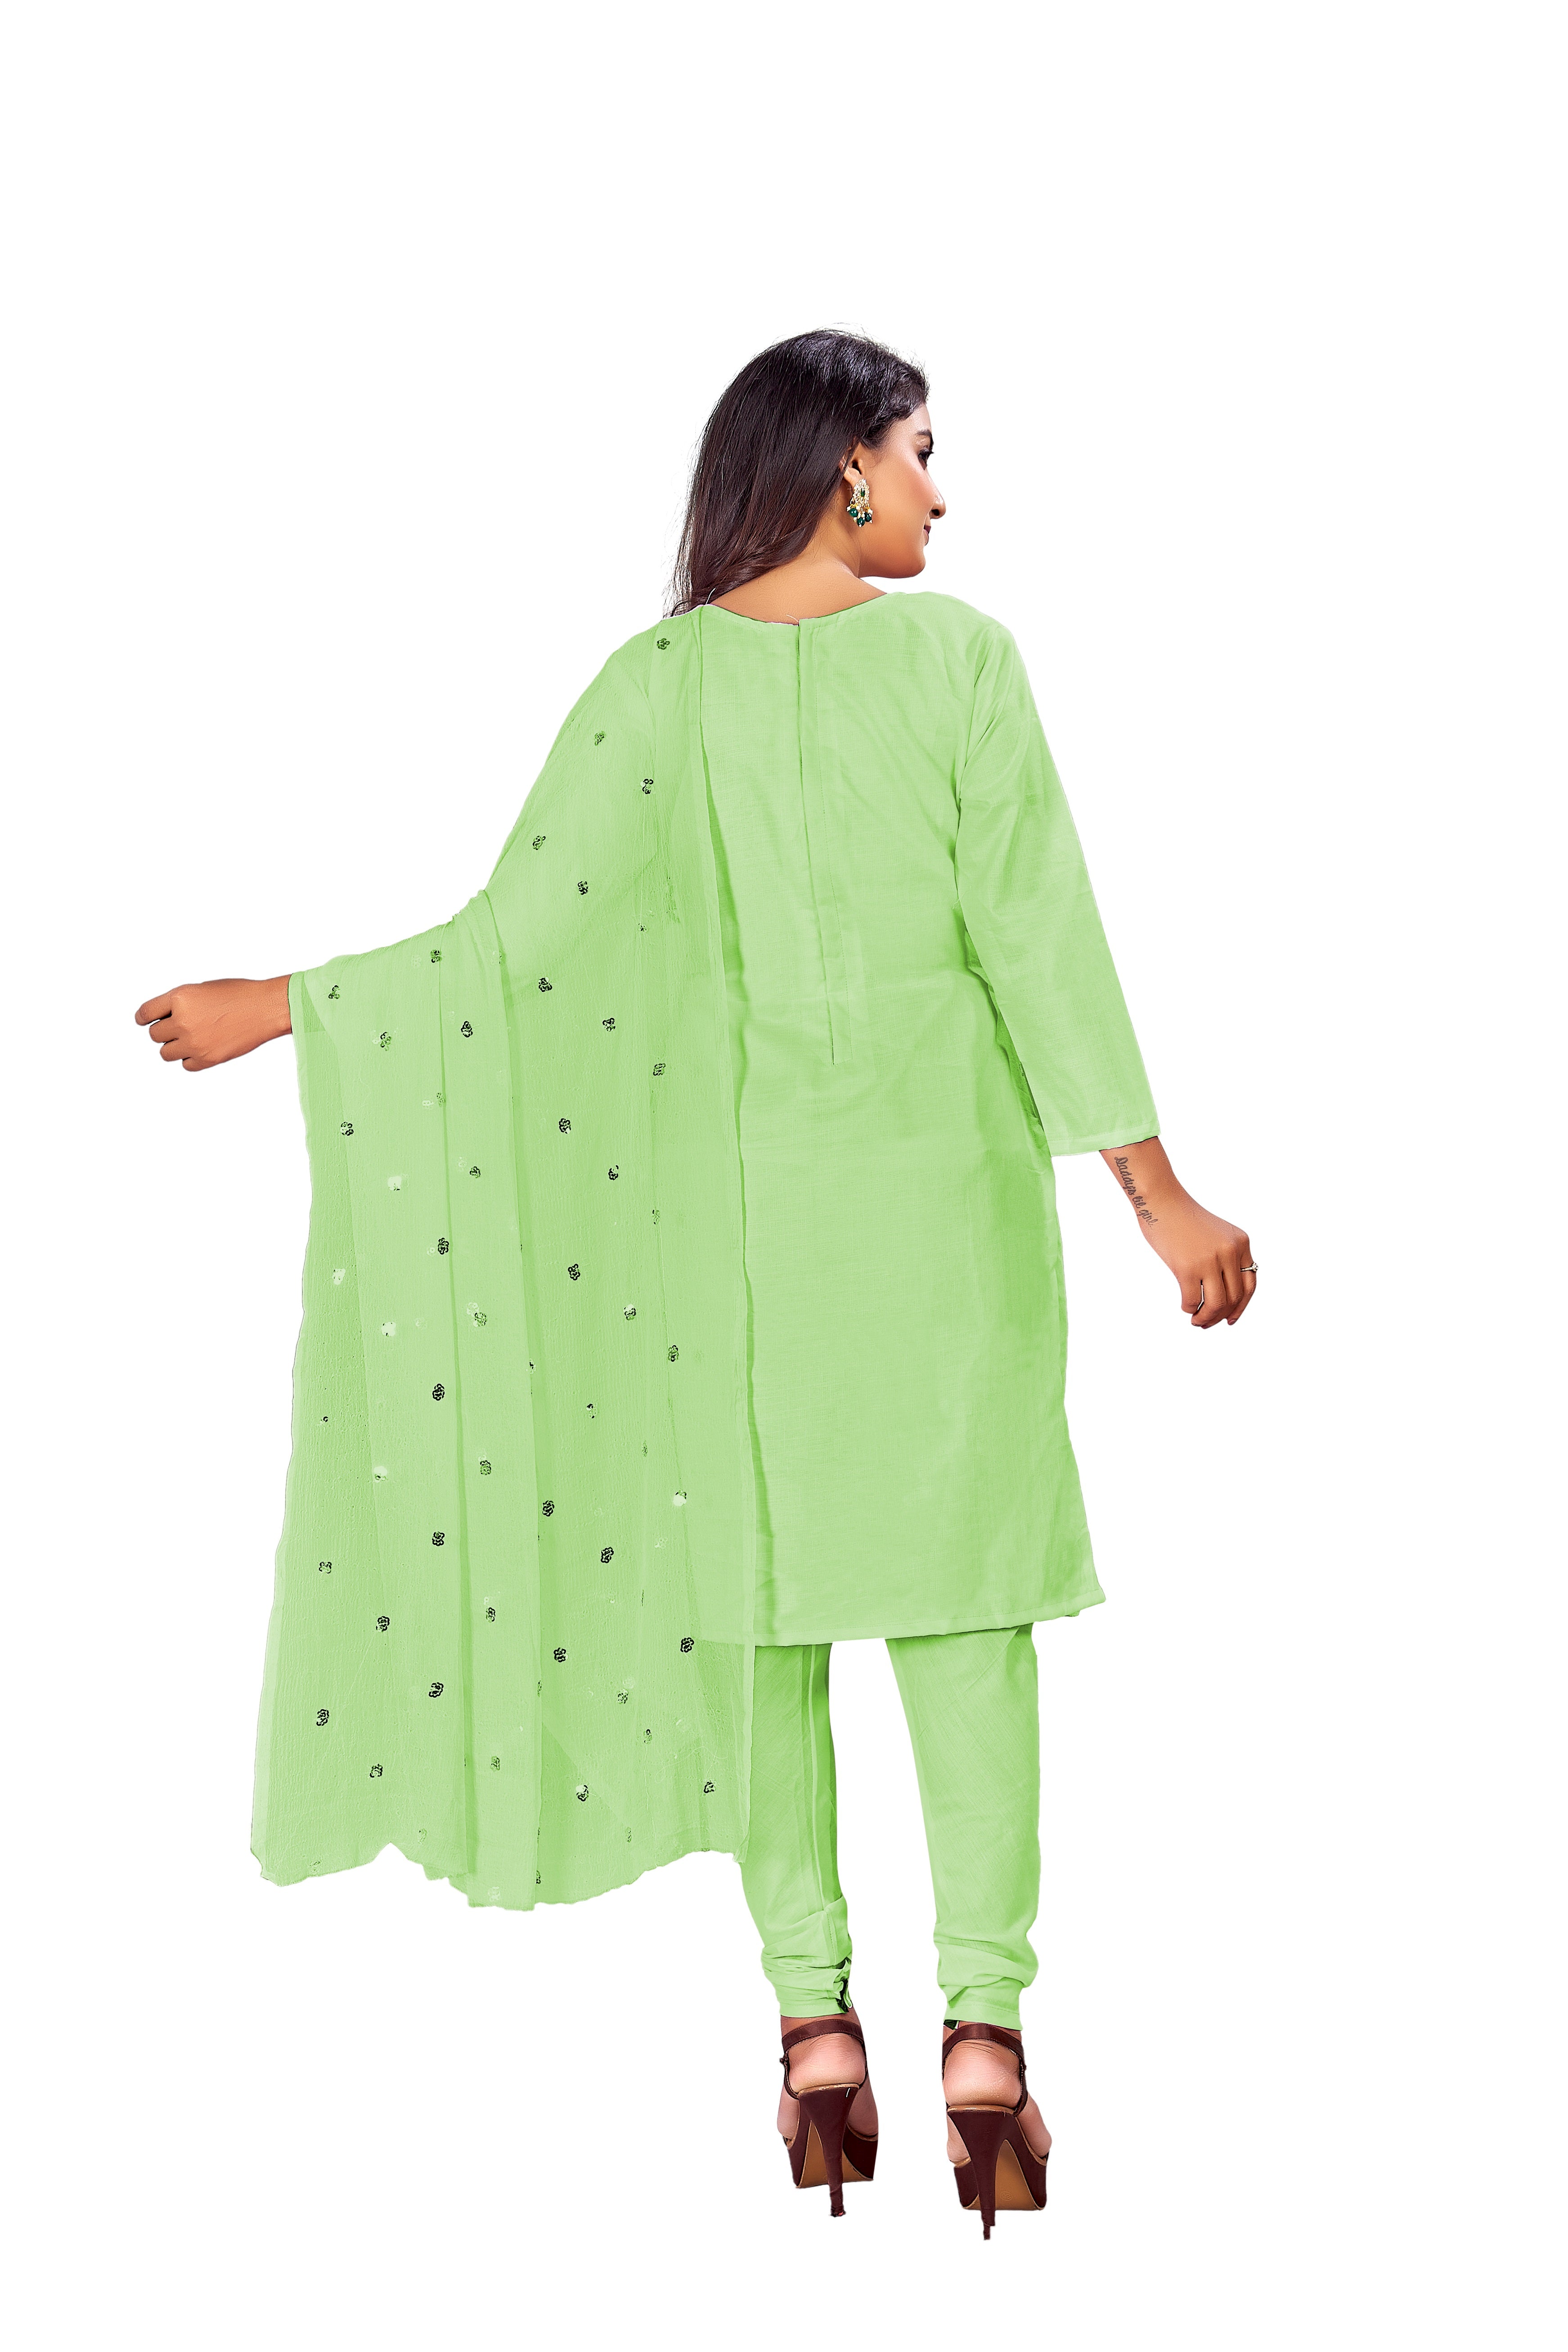 Women's Parrot Green Colour Semi-Stitched Suit Sets - Dwija Fashion